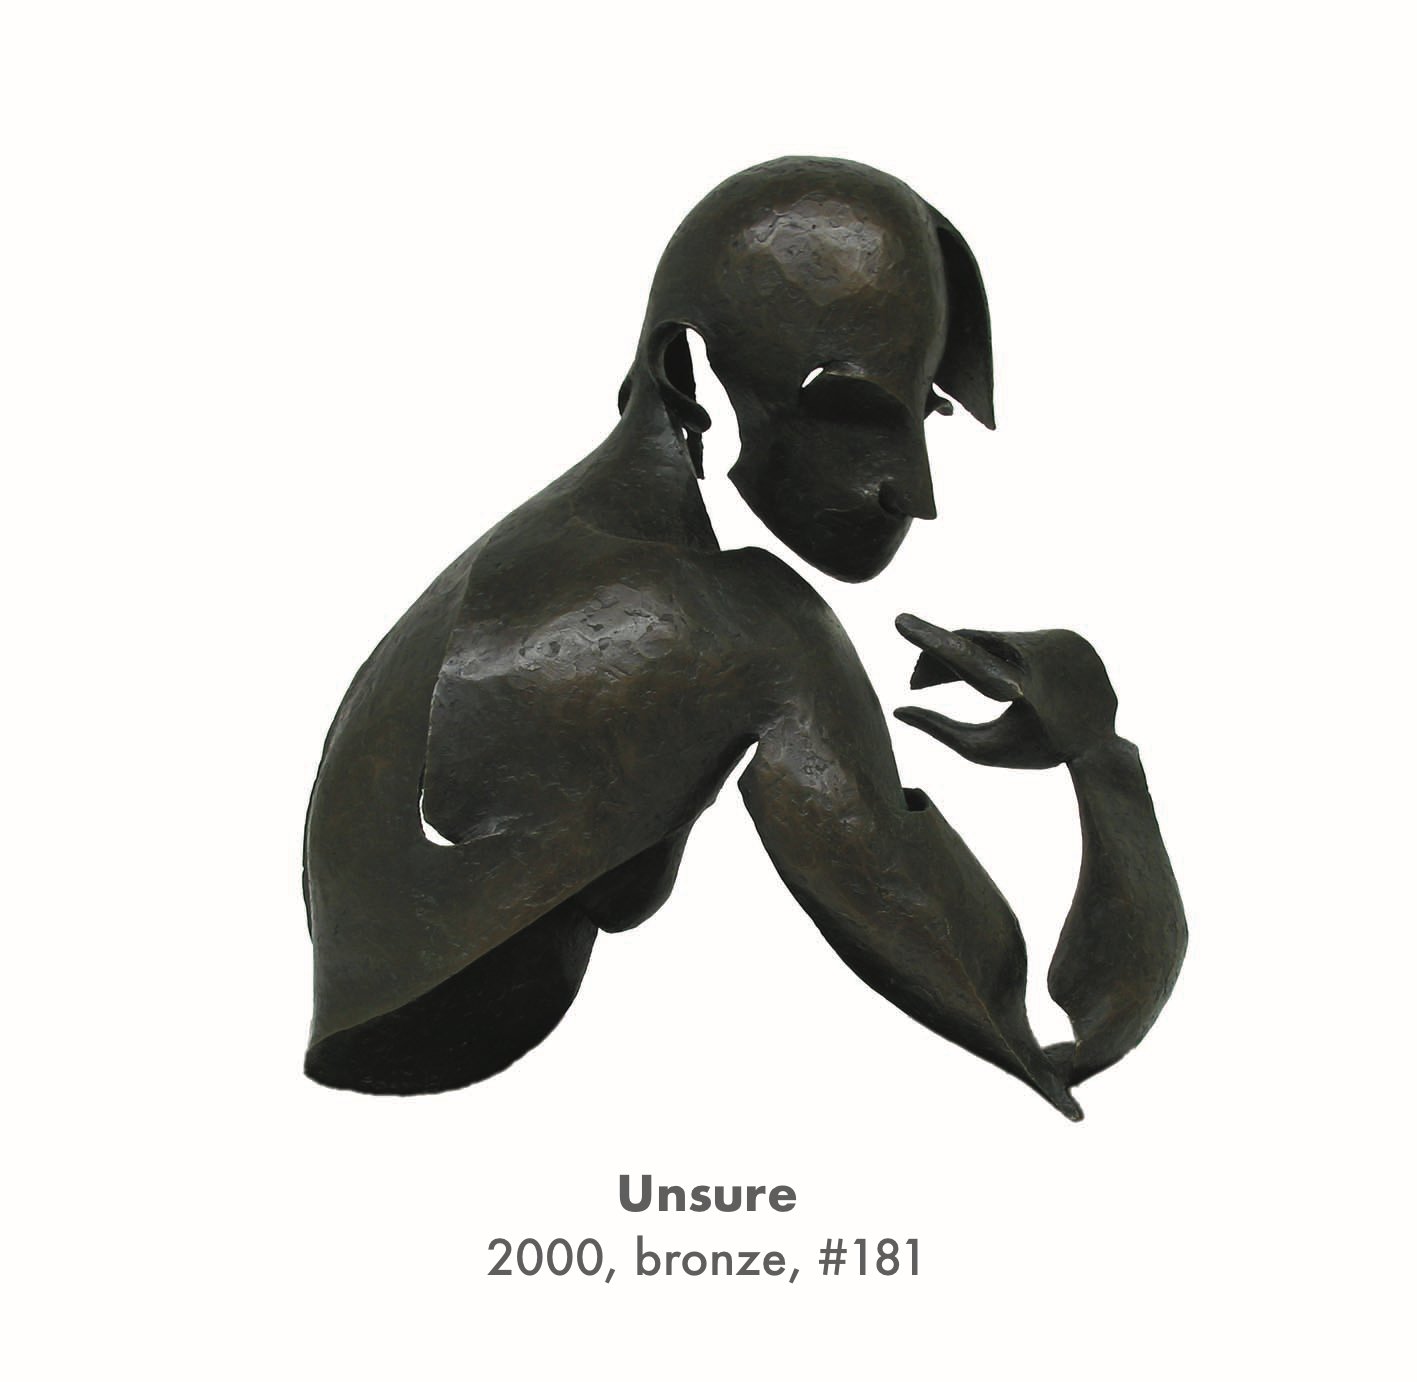 Unsure, 2000, bronze, #181